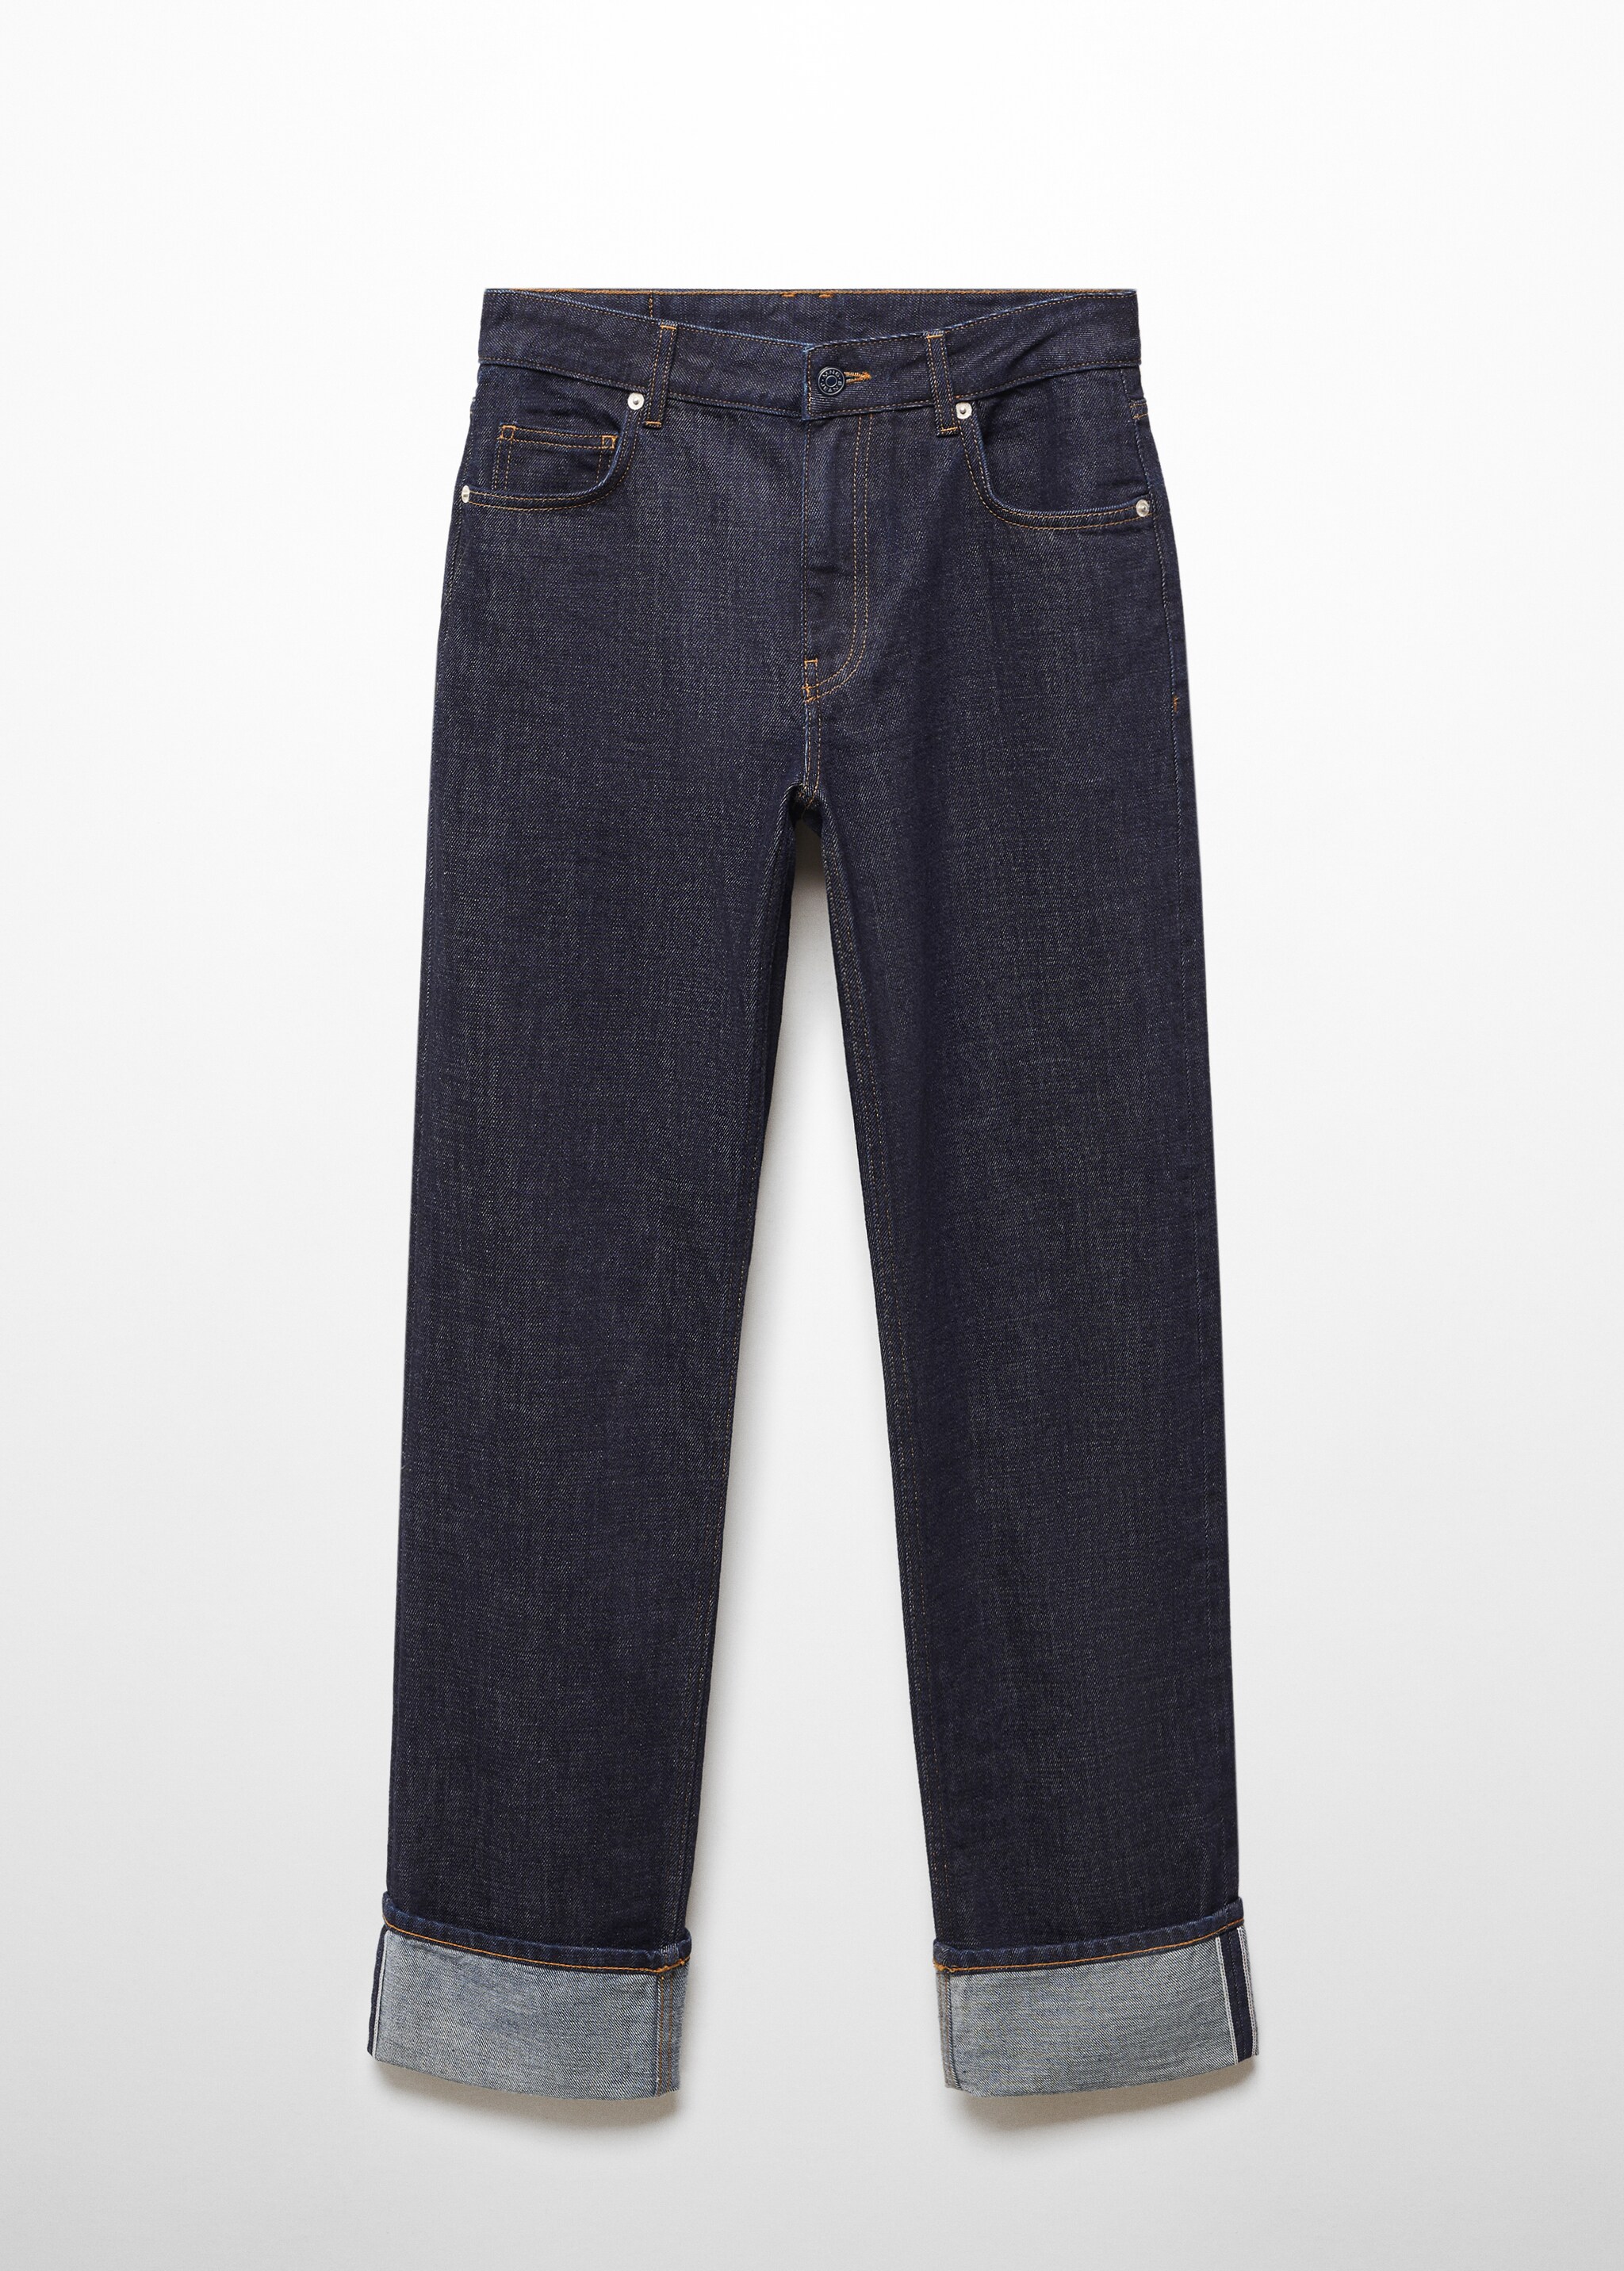 Прямые джинсы селвидж - Изделие без модели